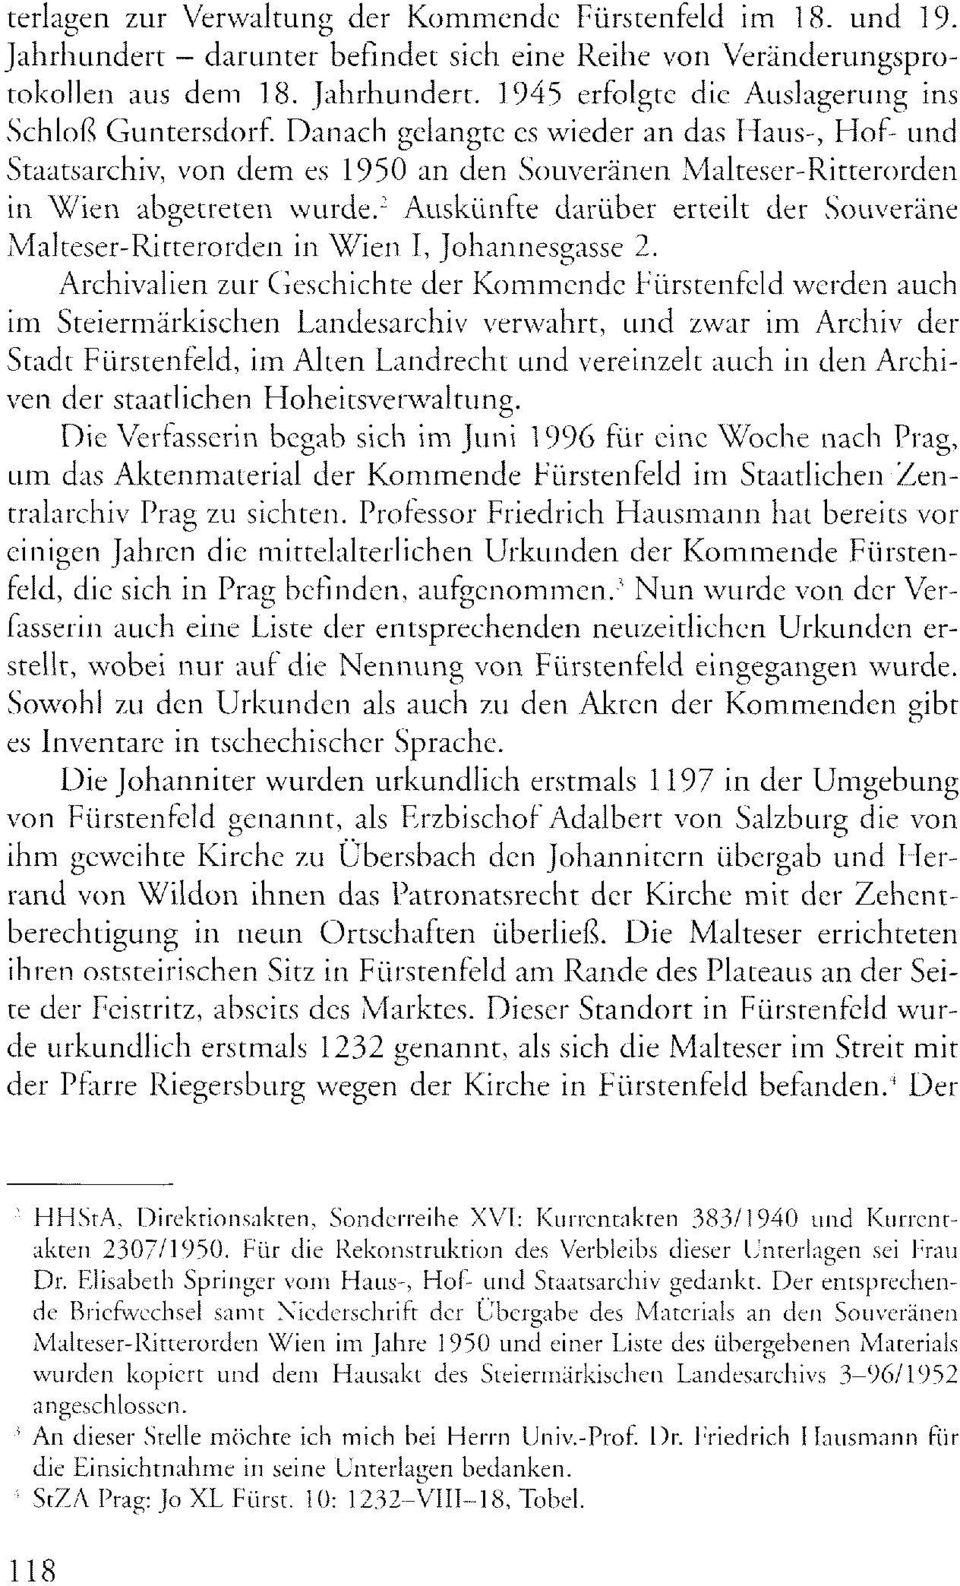 2 Auskünfte darüber erteilt der Souveräne Malteser-Ritterorden in Wien I, Johannesgasse 2.